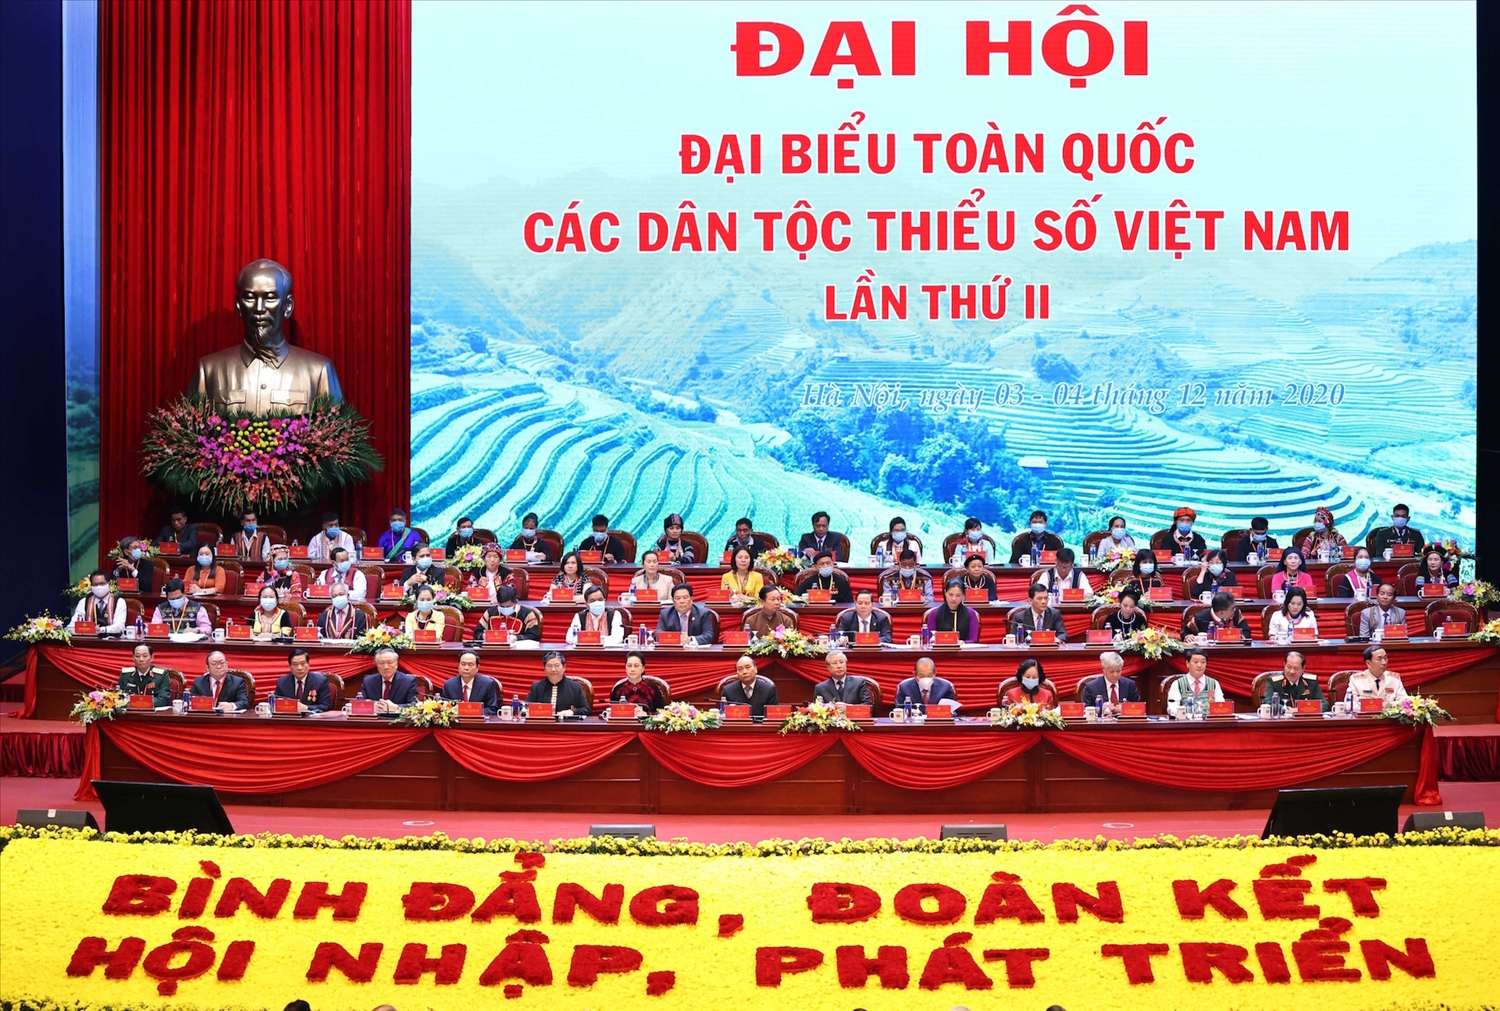 Đại hội đại biểu các DTTS Việt Nam là sự kiện chính trị quan trọng, là ngày hội kết nối, lan tỏa sức mạnh đại đoàn kết toàn dân tộc.